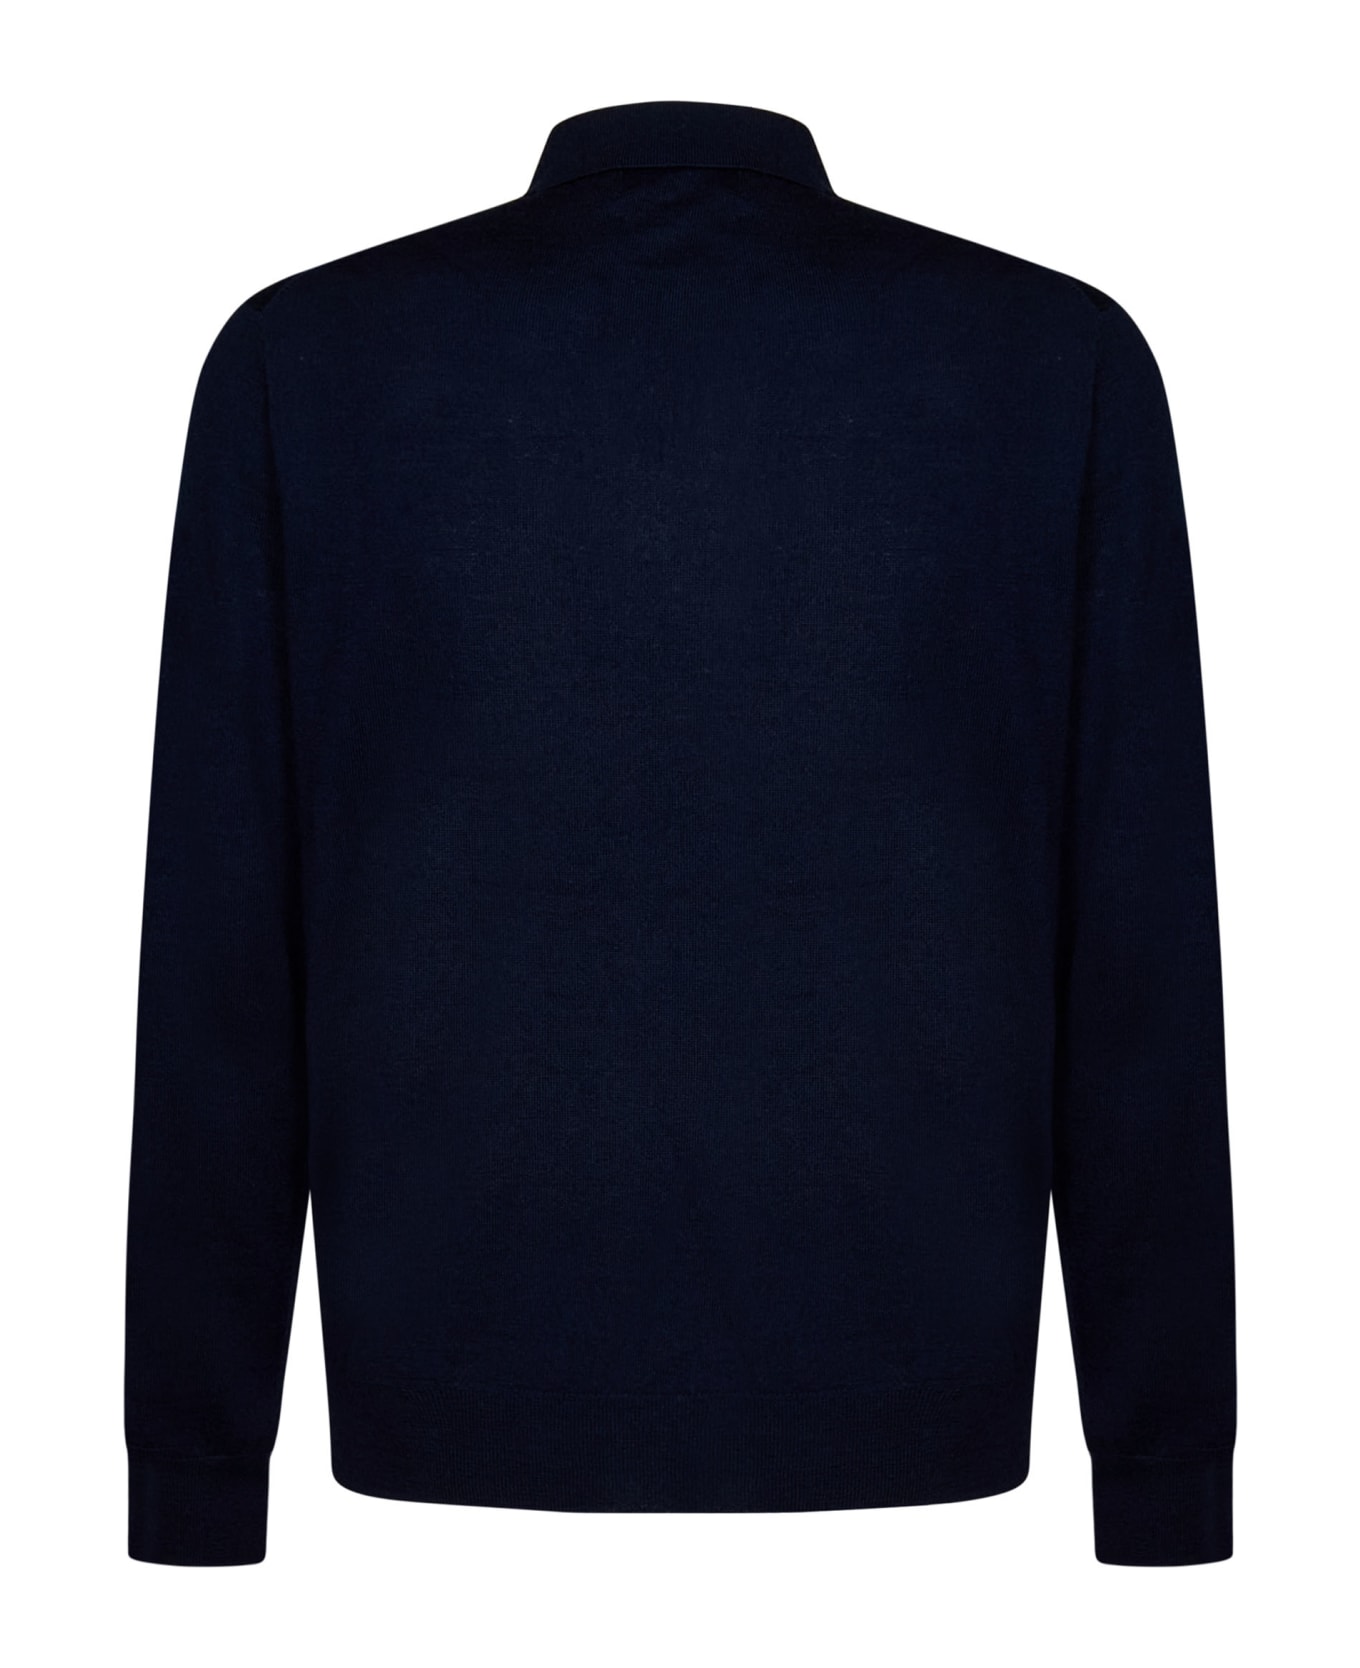 Ralph Lauren Sweater - NAVY ニットウェア